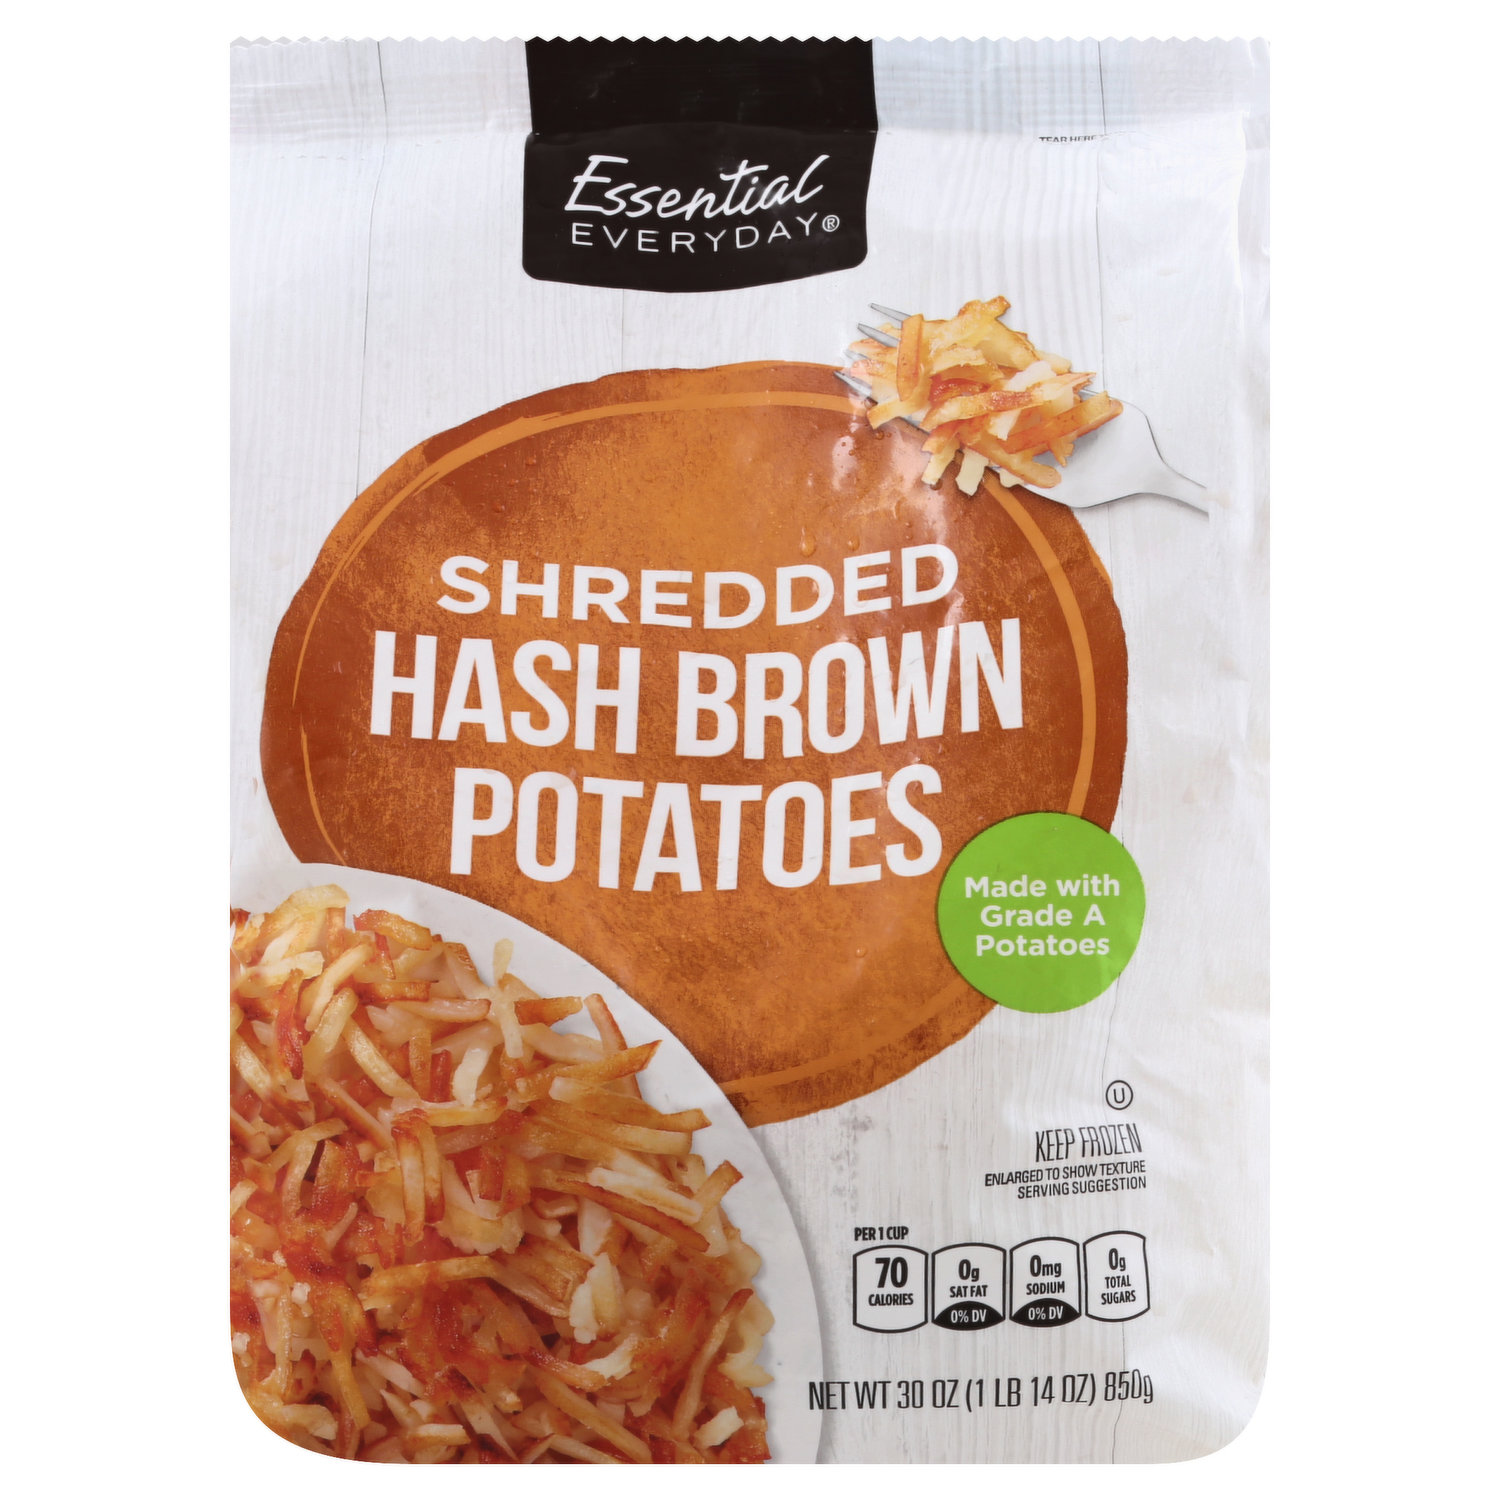 Great Value Shredded Hash Browns, 26 oz Bag (Frozen)